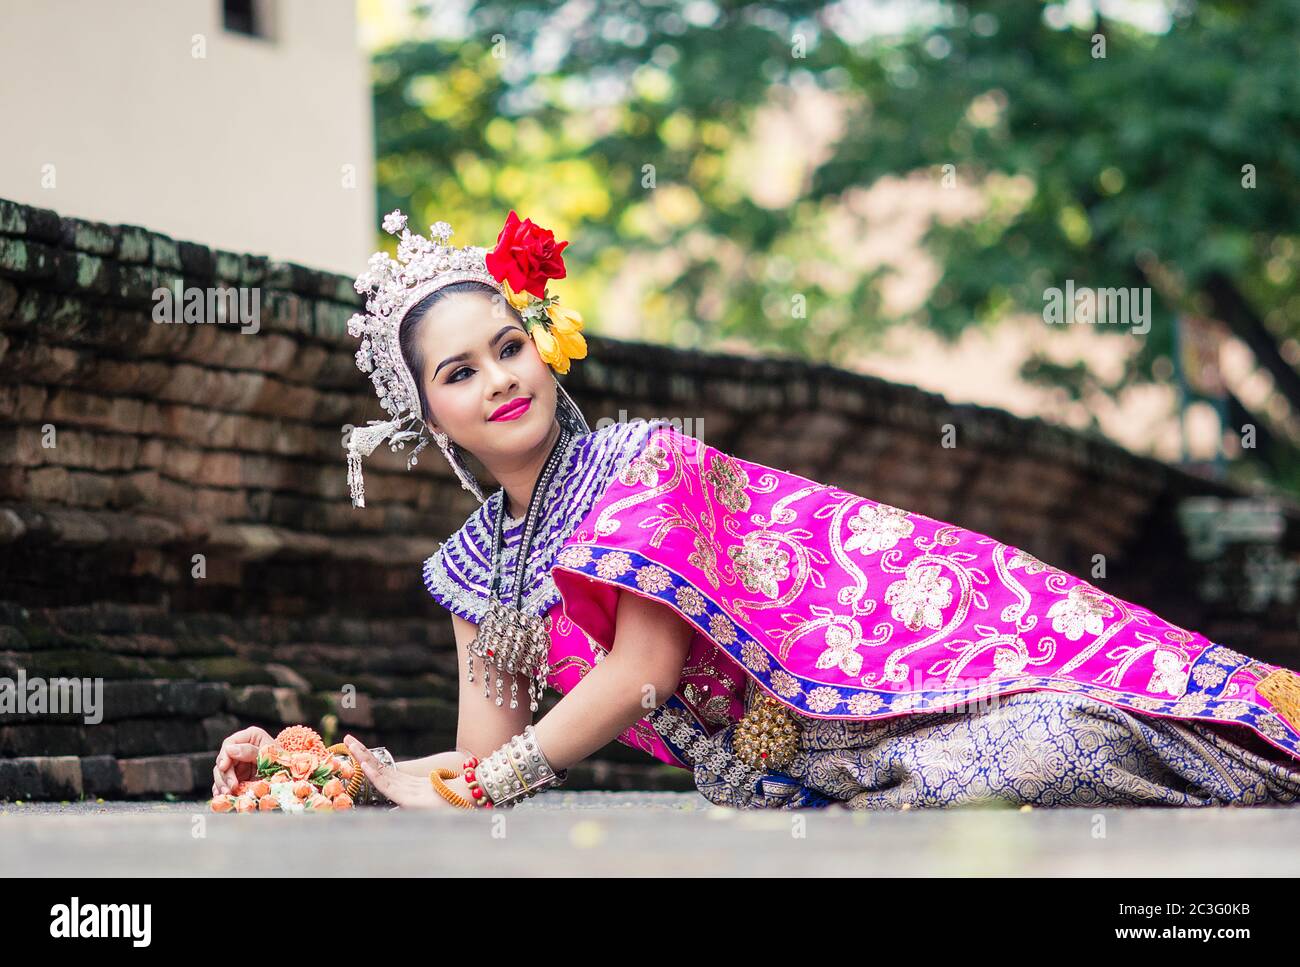 Femme asiatique portant une robe traditionnelle thaïlandaise typique. Il signifie littéralement costume thaïlandais, costume national. Banque D'Images